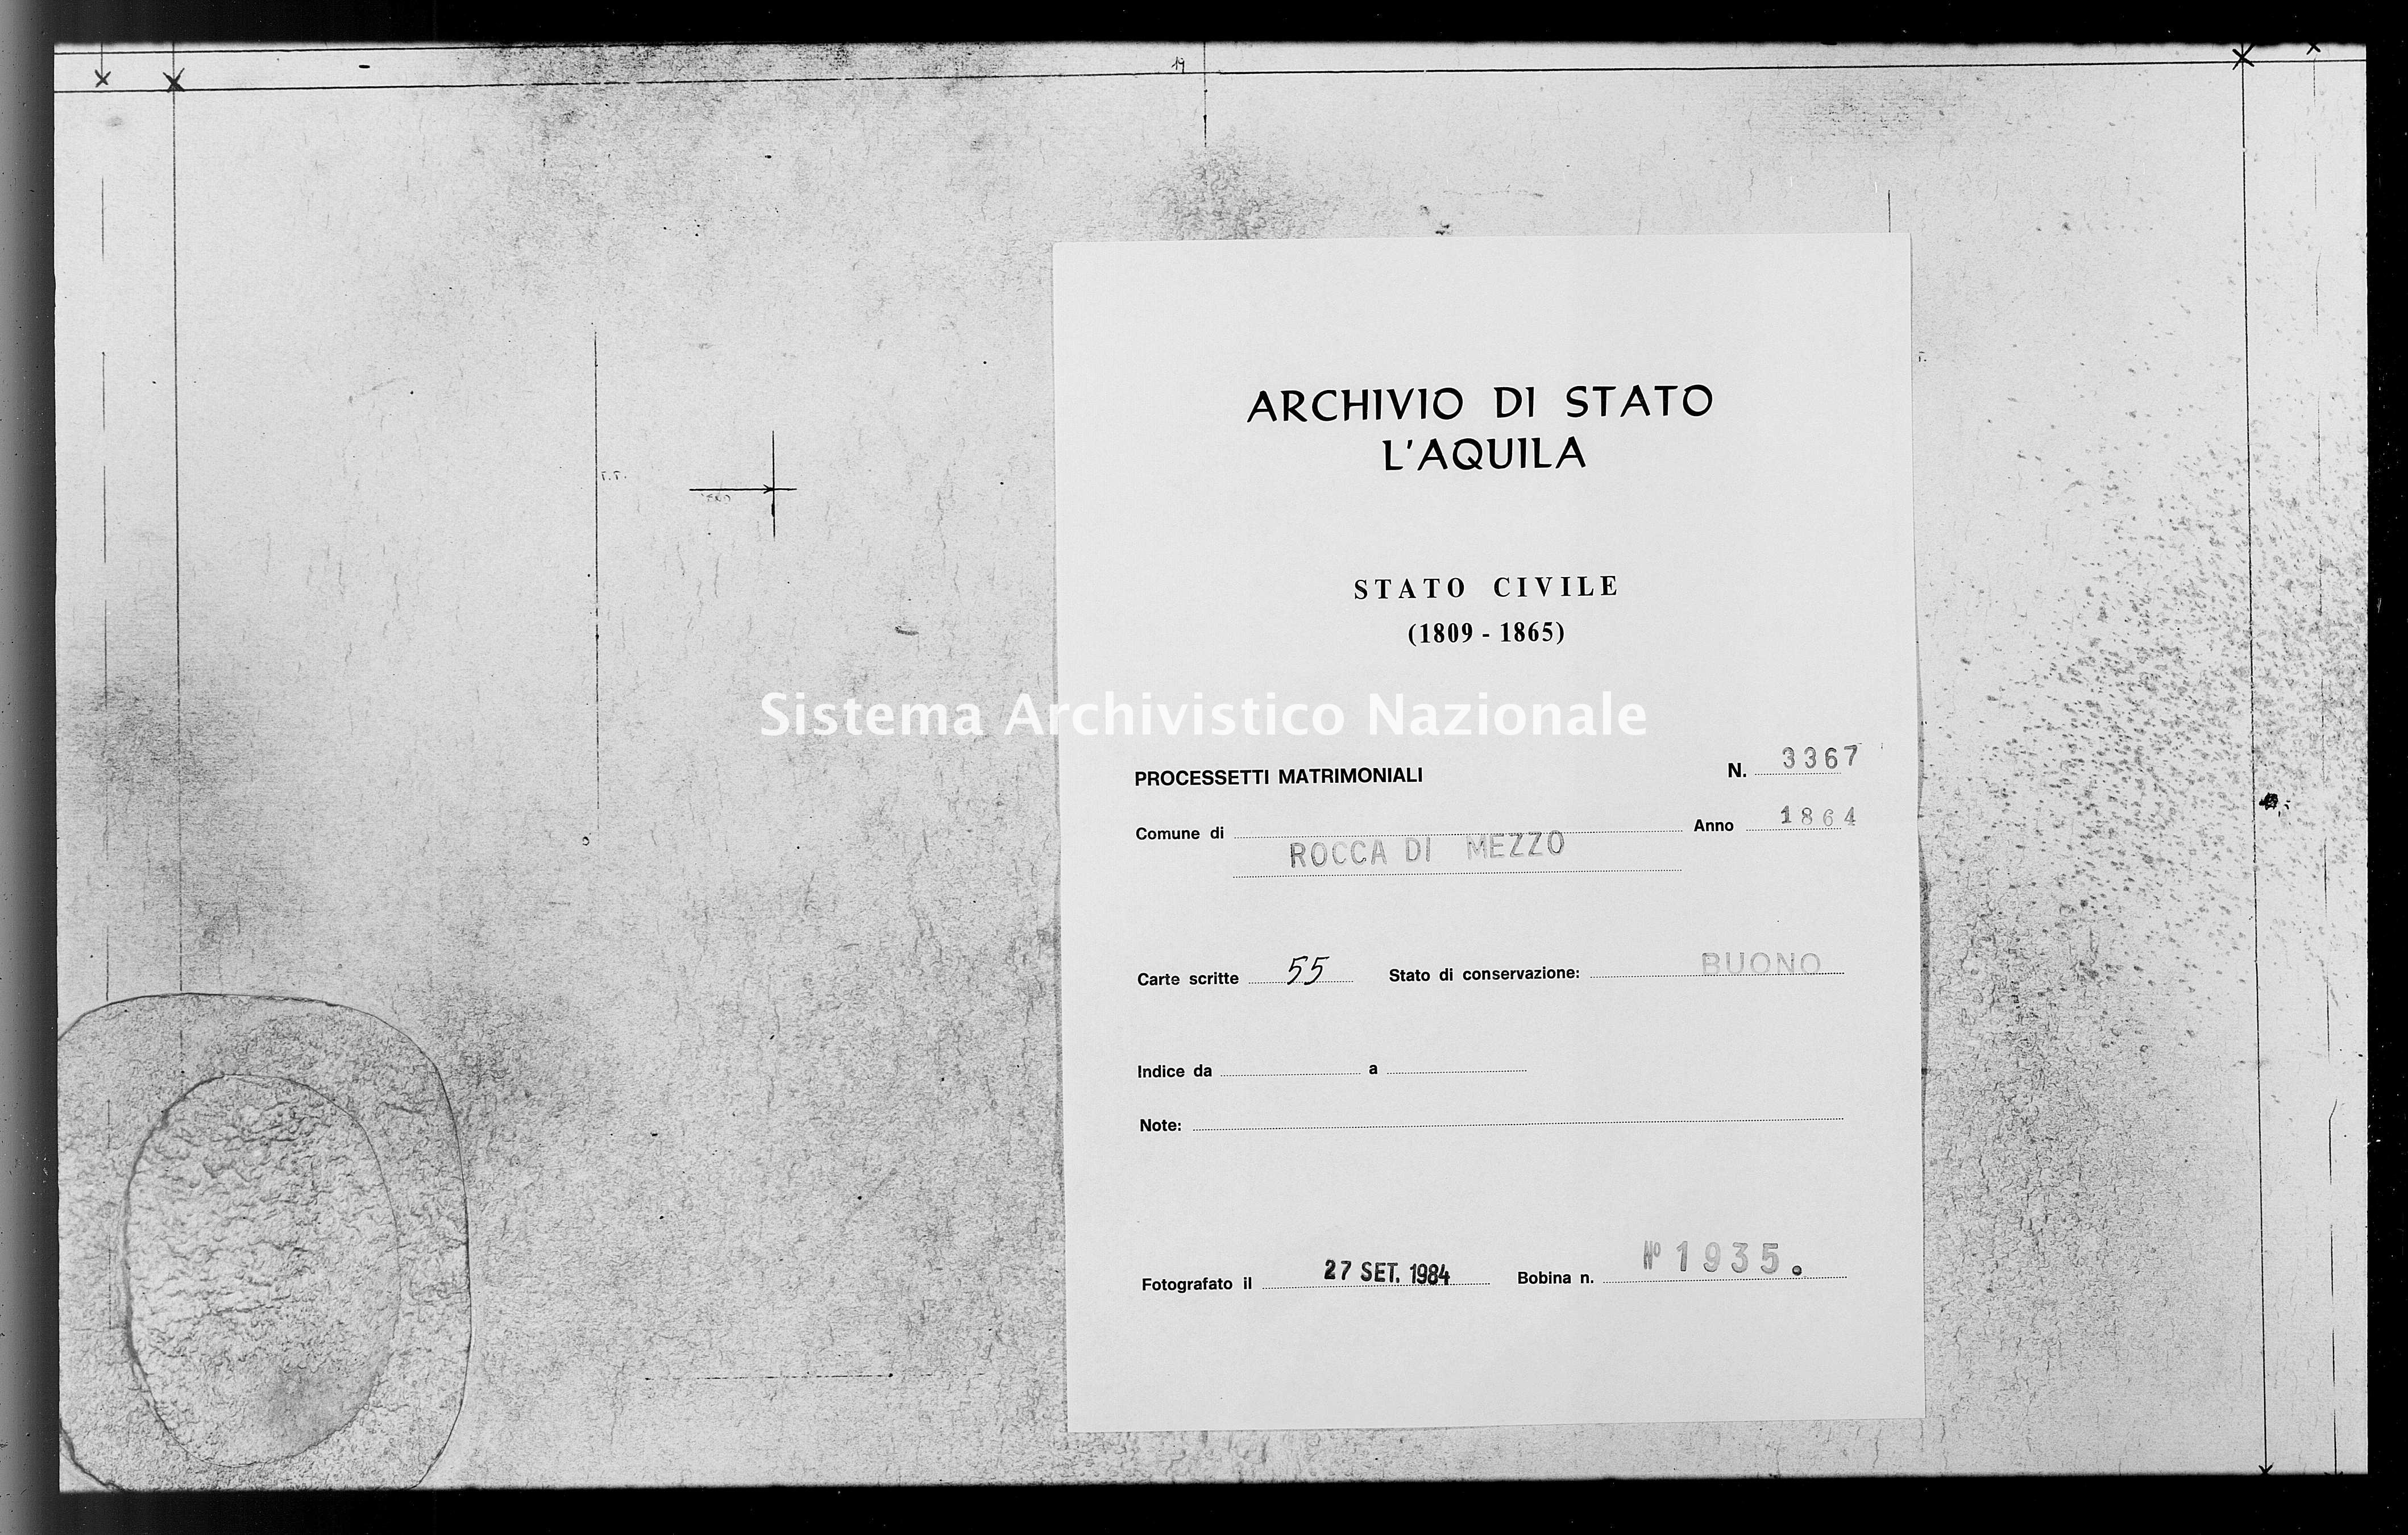 Archivio di stato di L'aquila - Stato civile italiano - Rocca di Mezzo - Matrimoni, processetti - 1864 - 3367 -